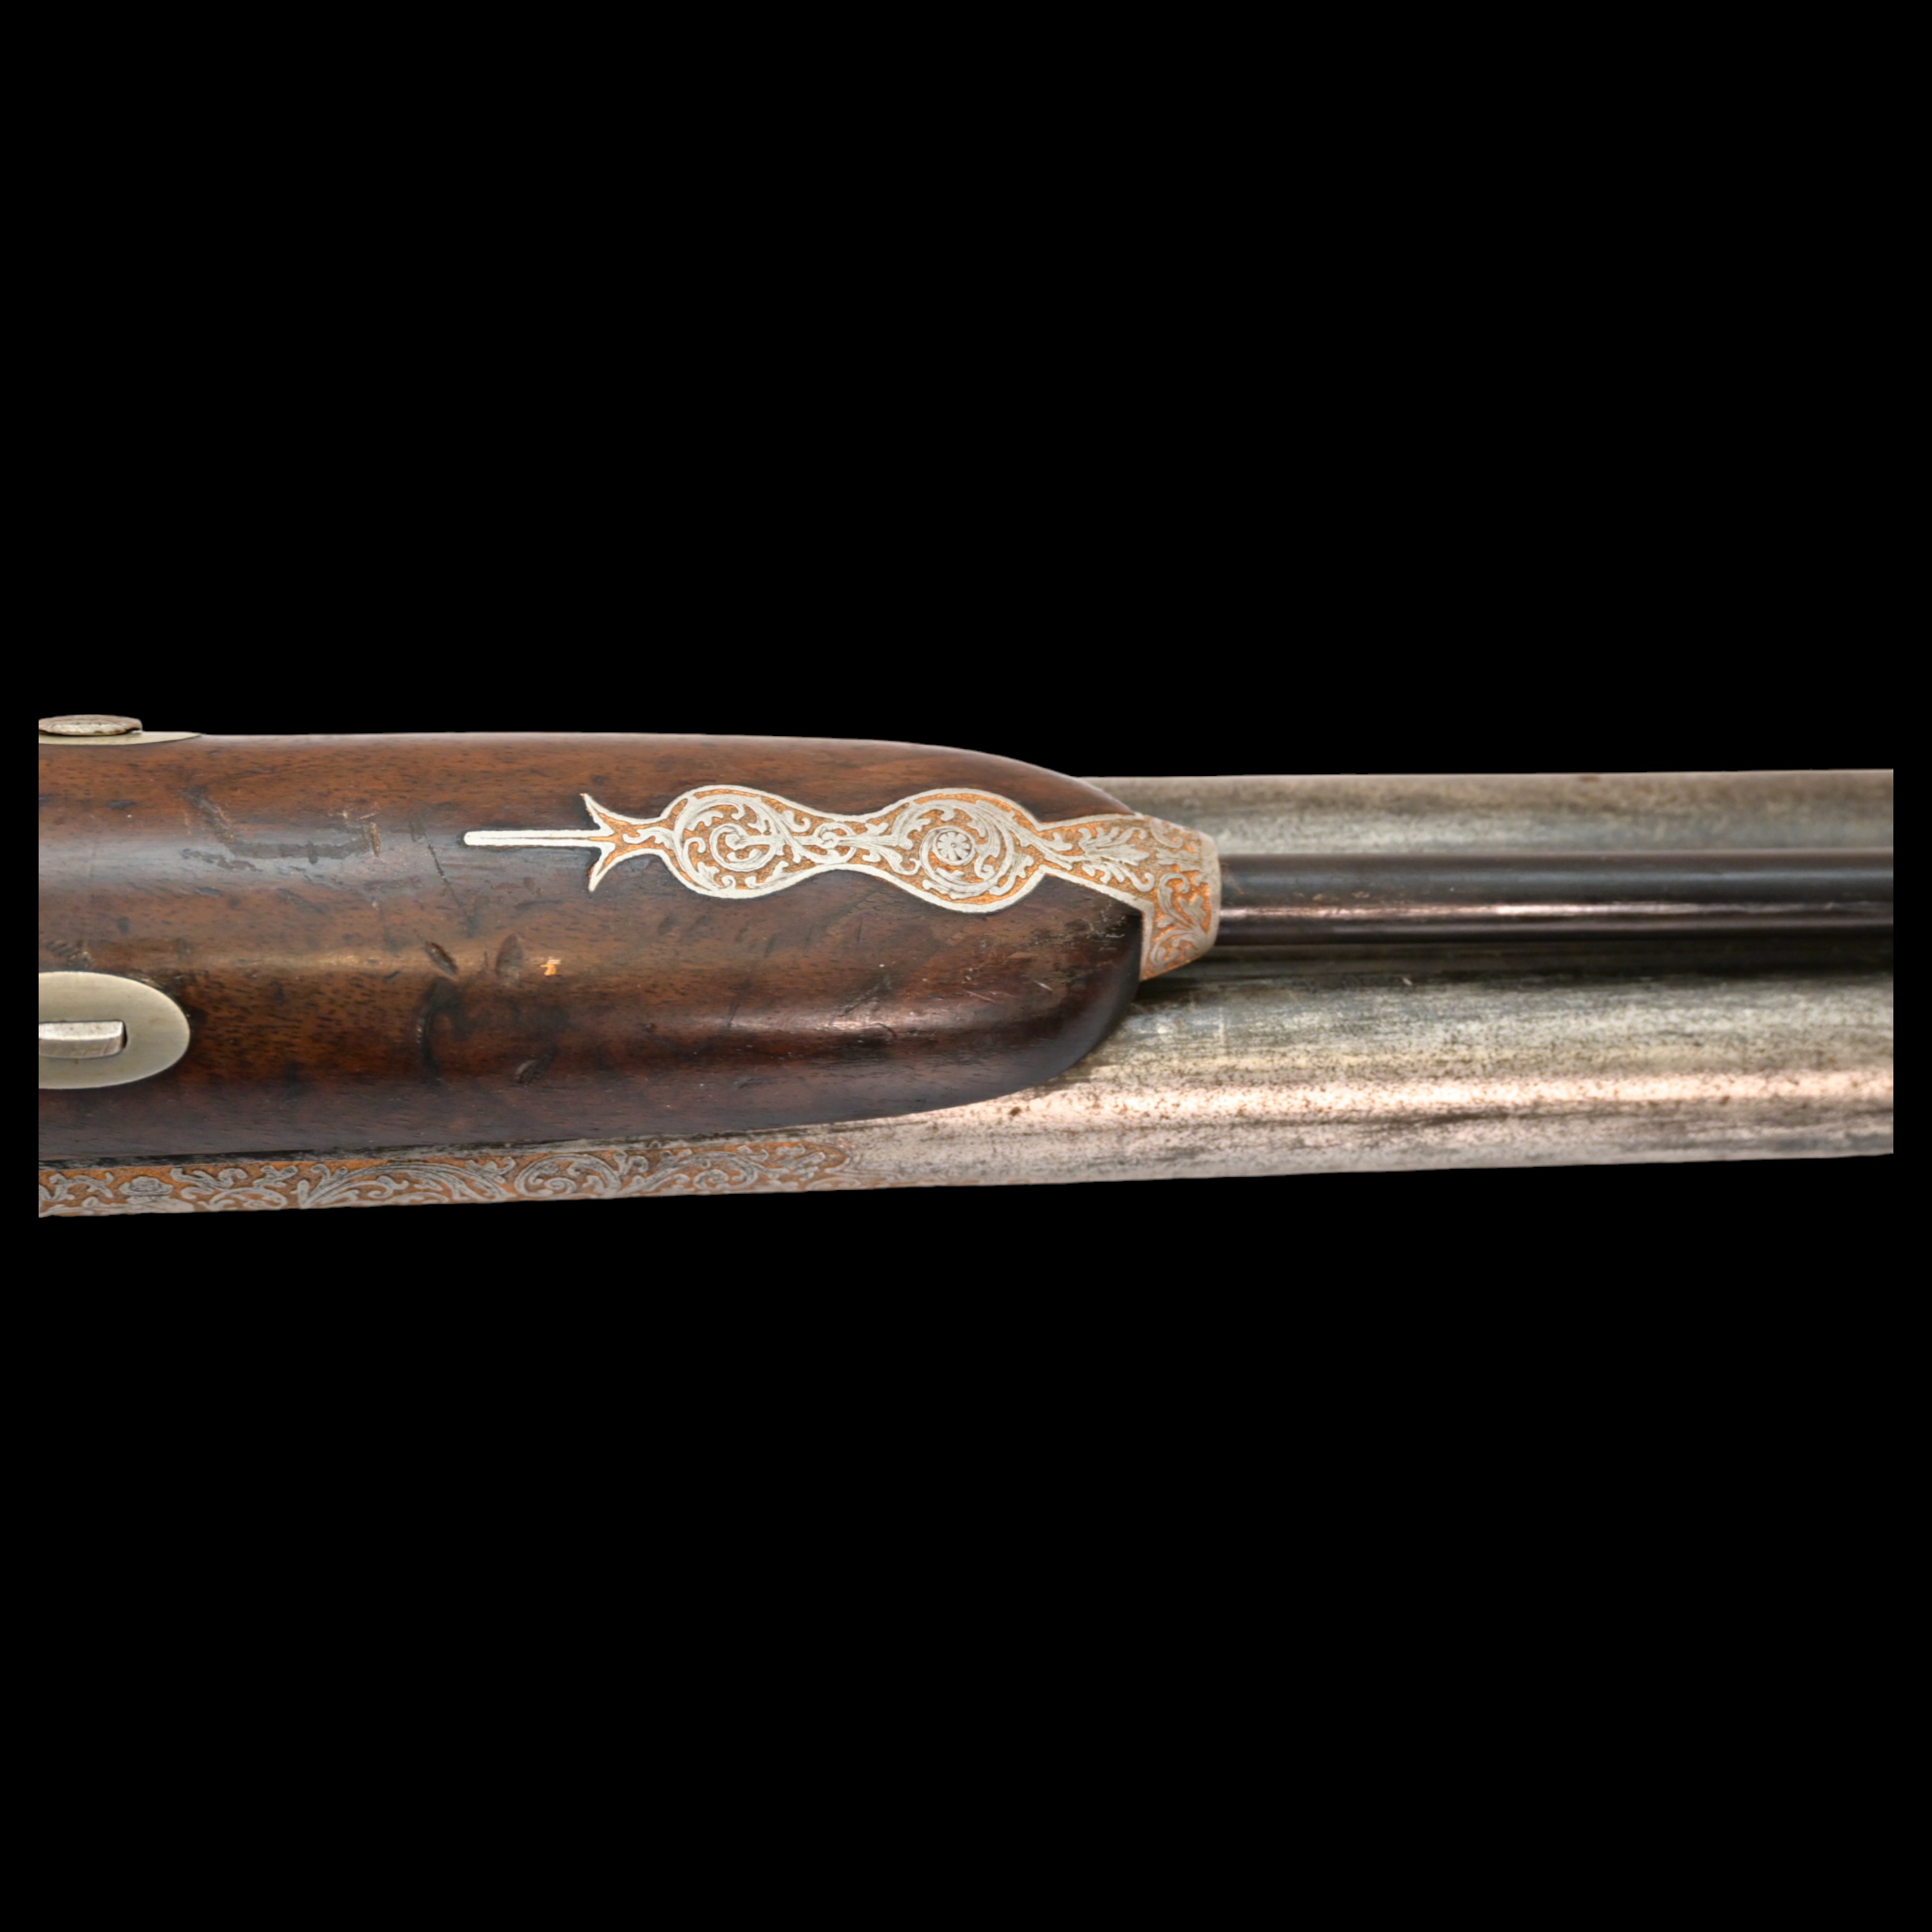 Rare Double-barrel percussion shotgun, Eusebio Zuloaga, royal gunsmith, Spain, mid-19th century. - Image 24 of 26